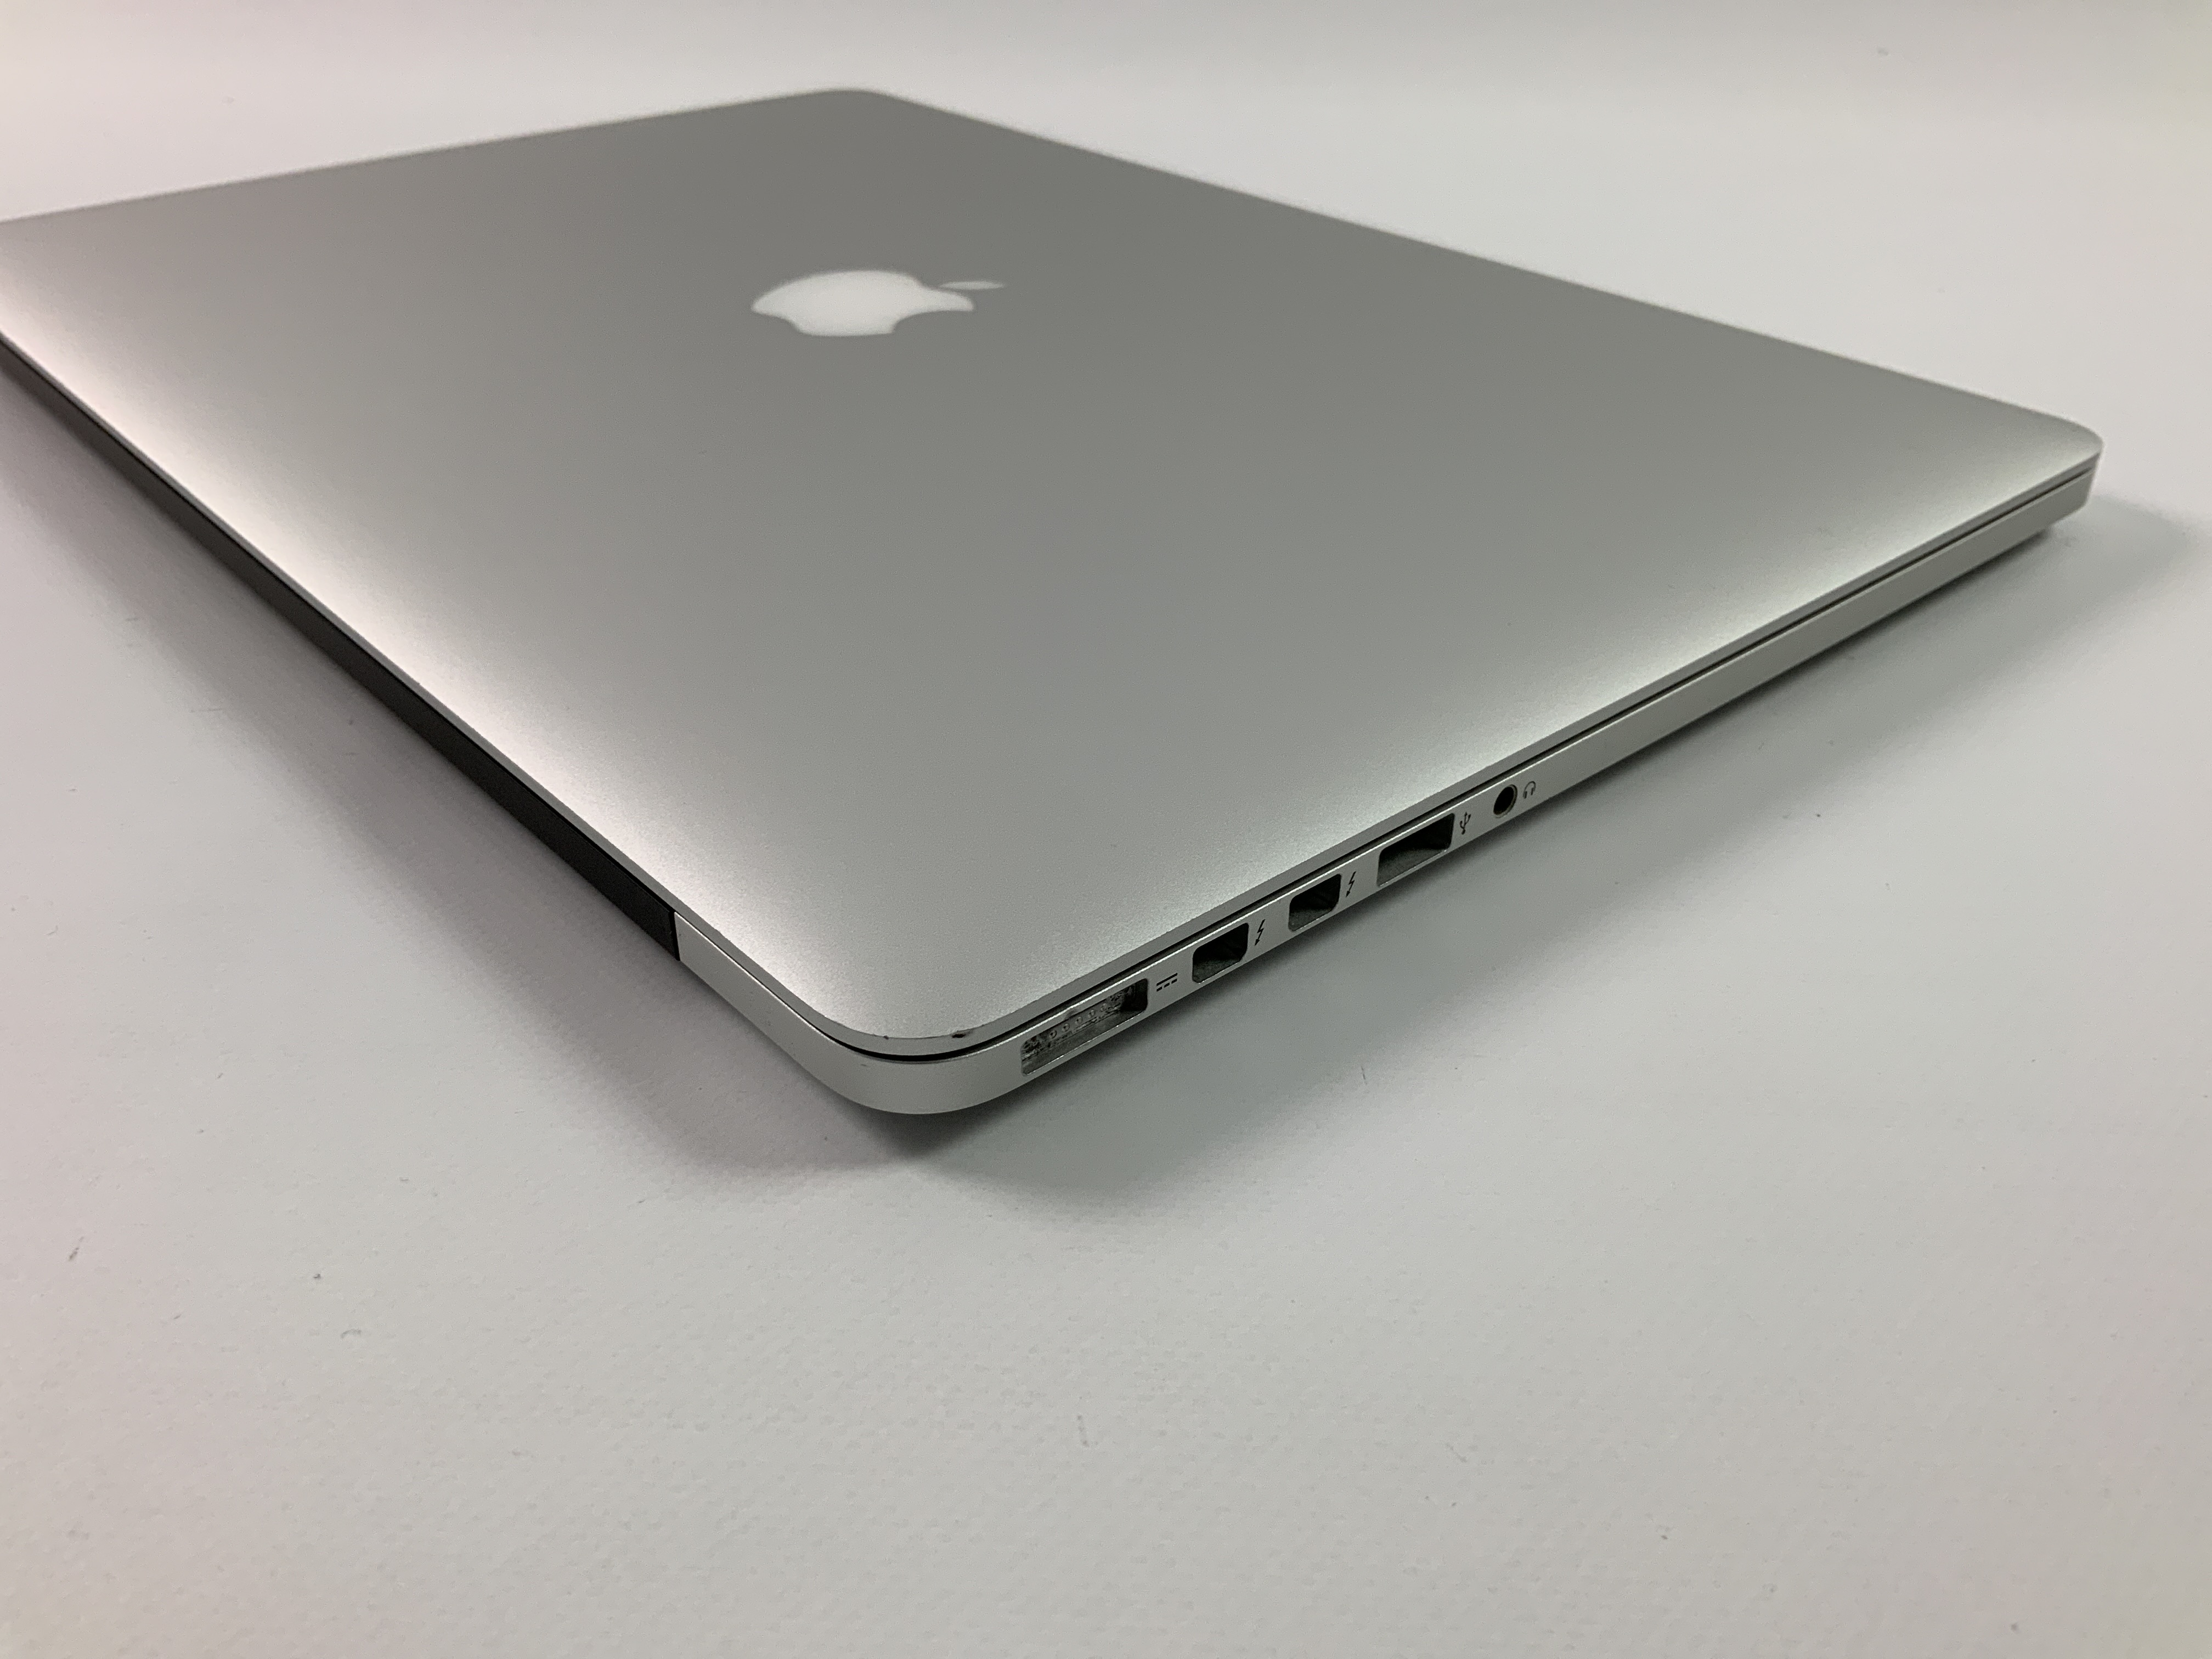 MacBook Pro Retina 15" Mid 2015 (Intel Quad-Core i7 2.2 GHz 16 GB RAM 256 GB SSD), Intel Quad-Core i7 2.2 GHz, 16 GB RAM, 256 GB SSD, bild 3